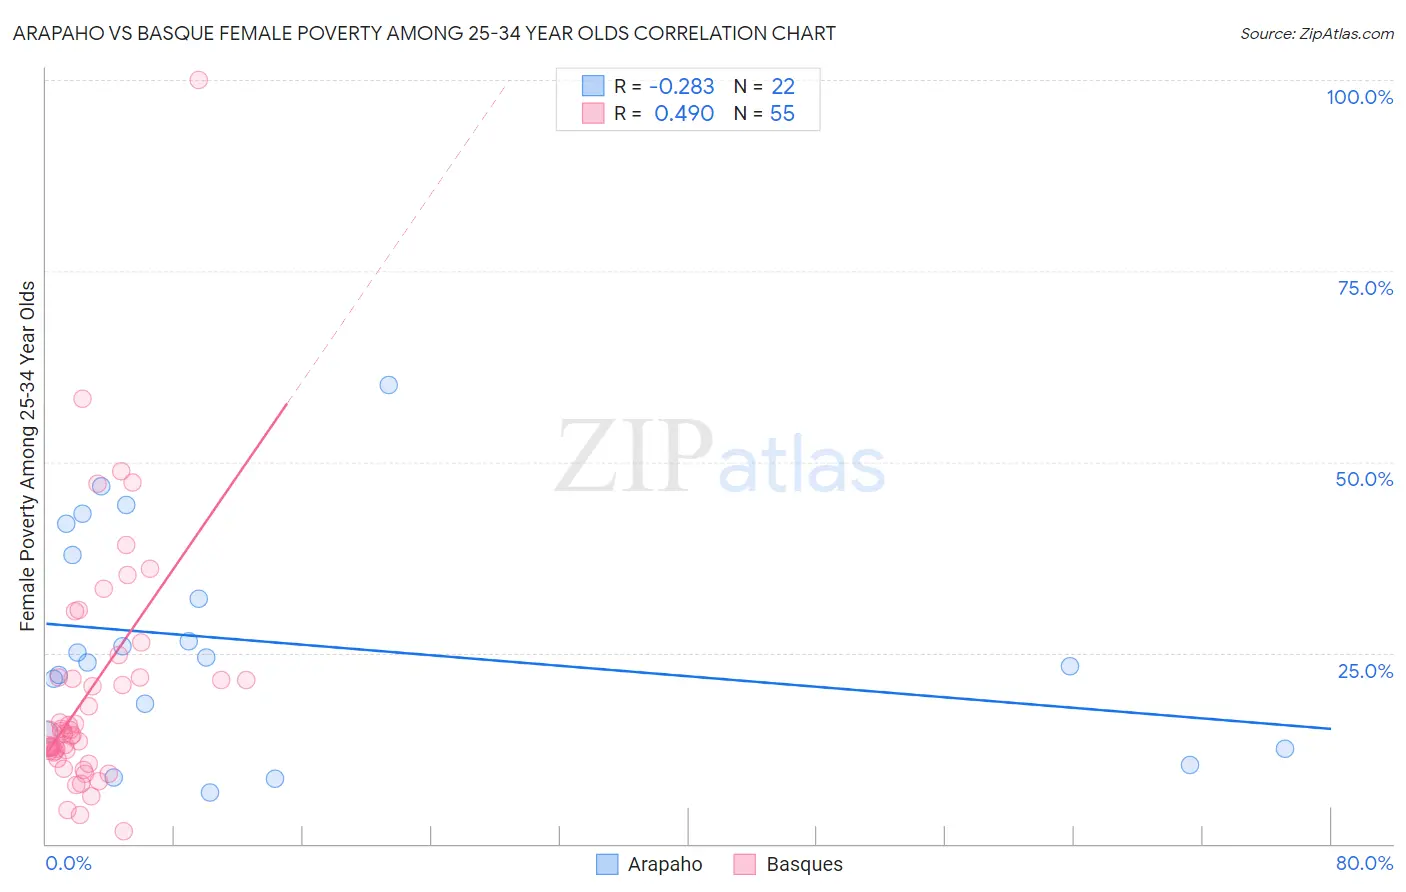 Arapaho vs Basque Female Poverty Among 25-34 Year Olds